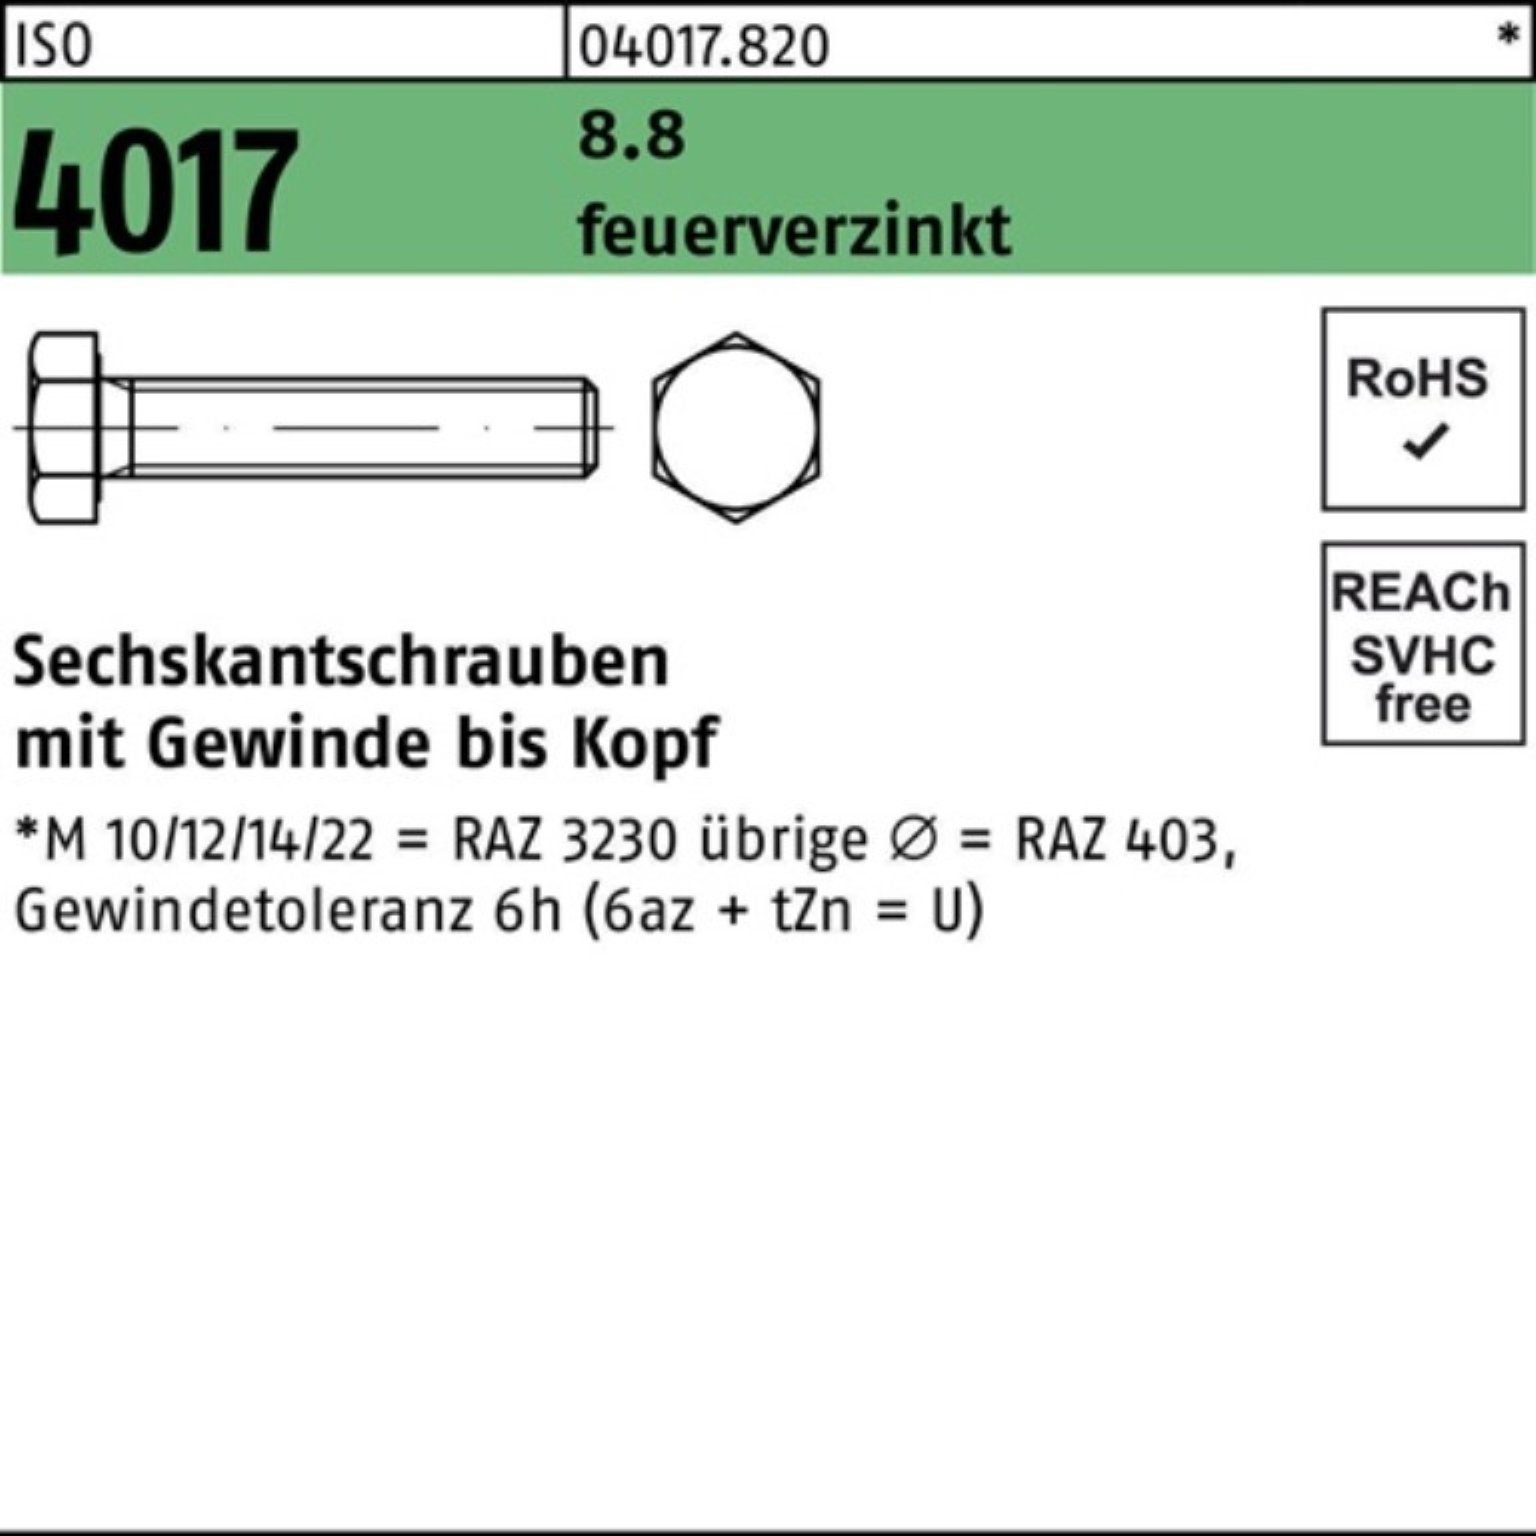 Bufab Sechskantschraube 100er Pack Sechskantschraube ISO 4017 VG M10x 40 8.8 feuerverz. 100 St